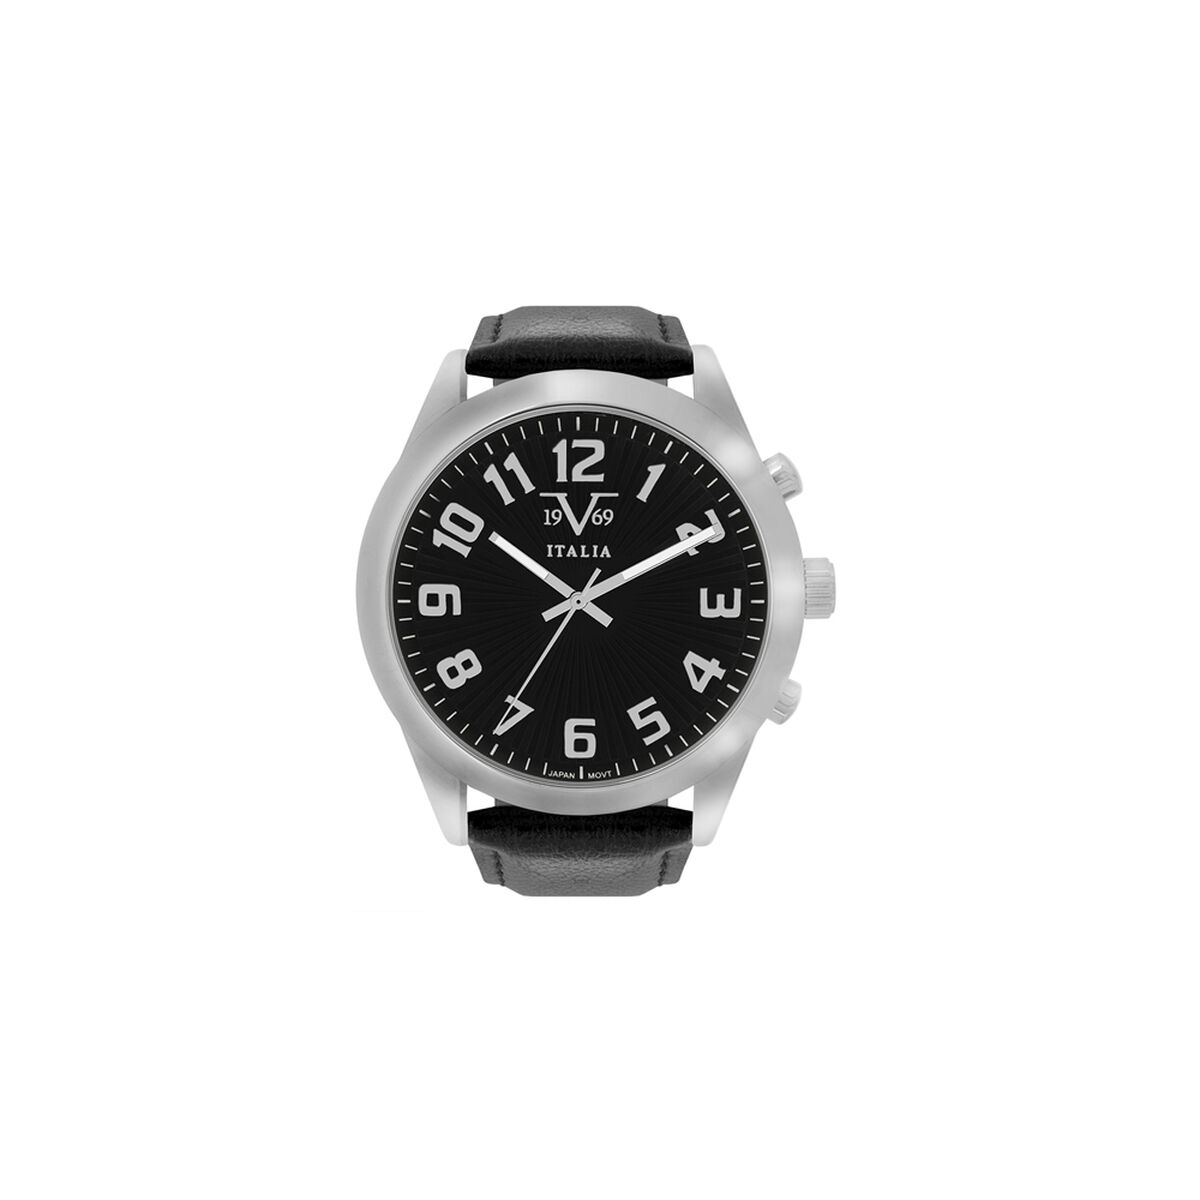 Reloj Análogo Hombre 19V69 Italia V19690464